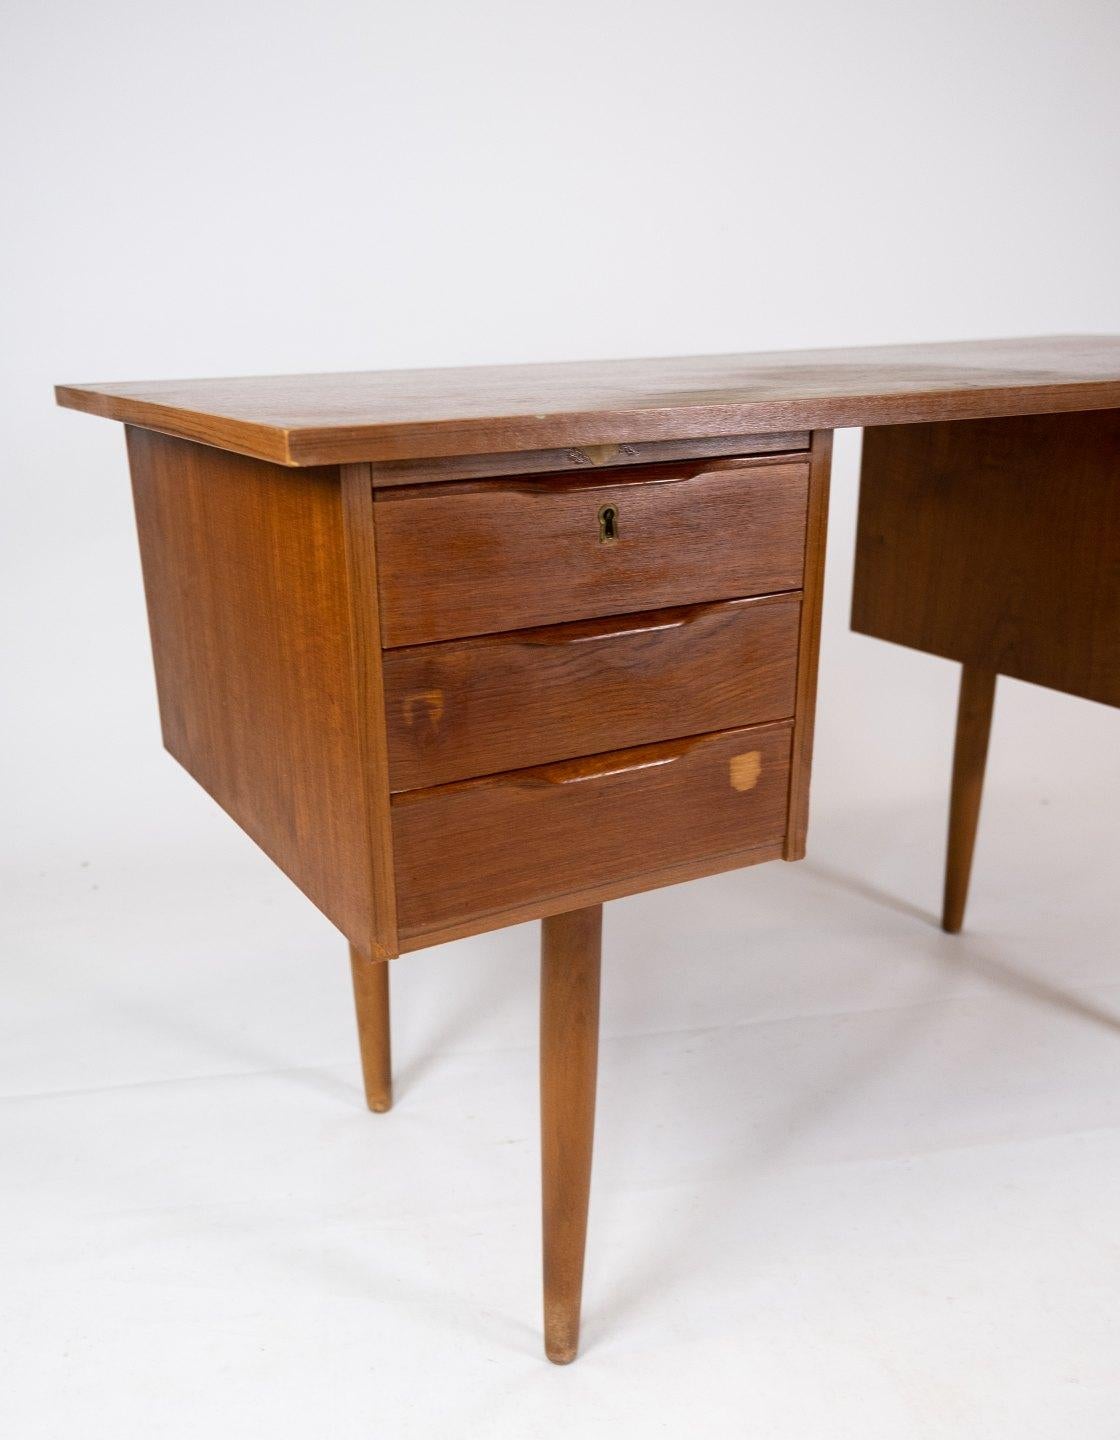 Ce bureau est un bel exemple de design danois des années 1960, fabriqué en bois de teck, ce qui lui confère un aspect naturel et intemporel. La belle couleur dorée et le motif bois unique ajoutent du caractère et de la chaleur à n'importe quelle